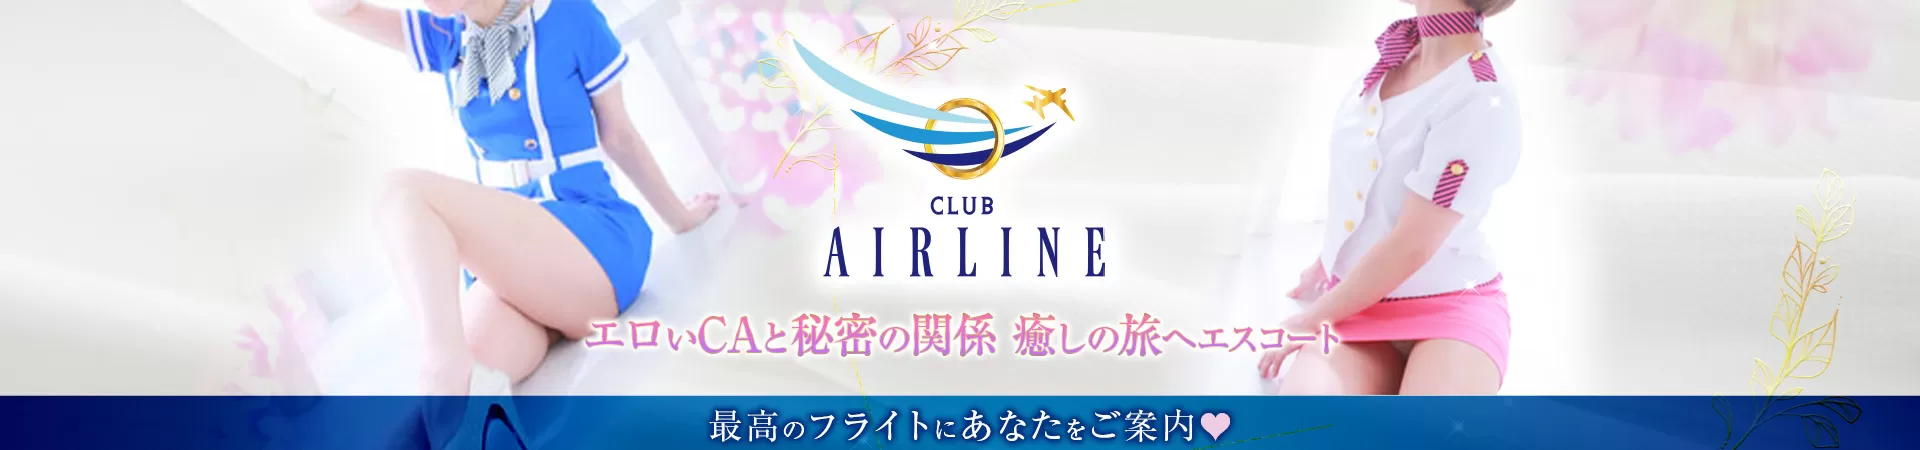 Club Airline(エアライン)